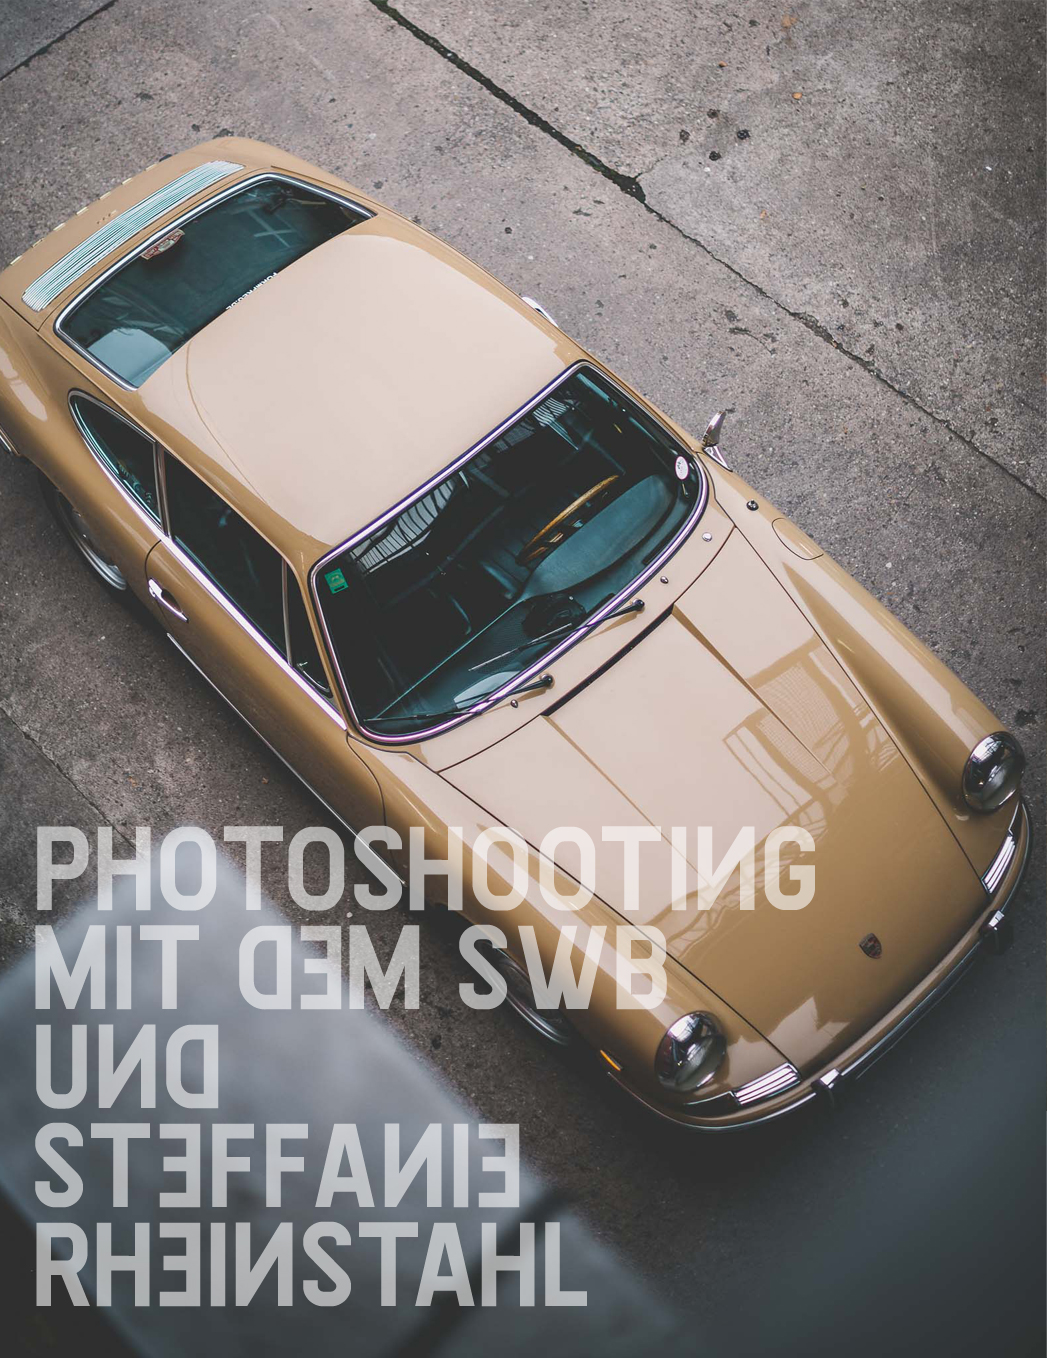 Photoshooting mit dem SWB und Steffanie Rheinstahl…